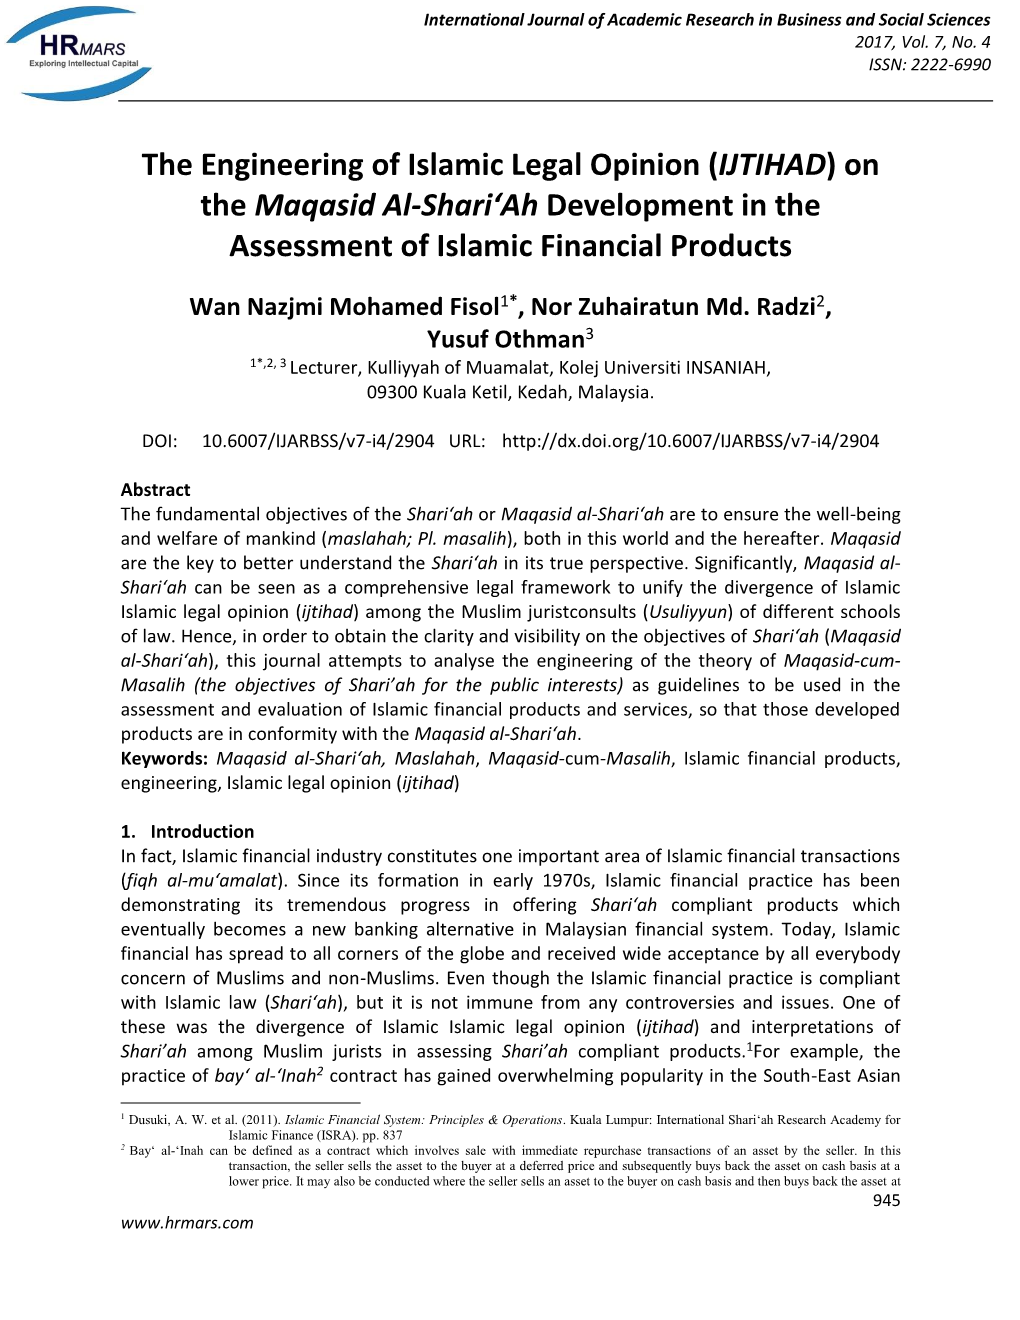 ( IJTIHAD) on the Maqasid Al-Shari'ah Development